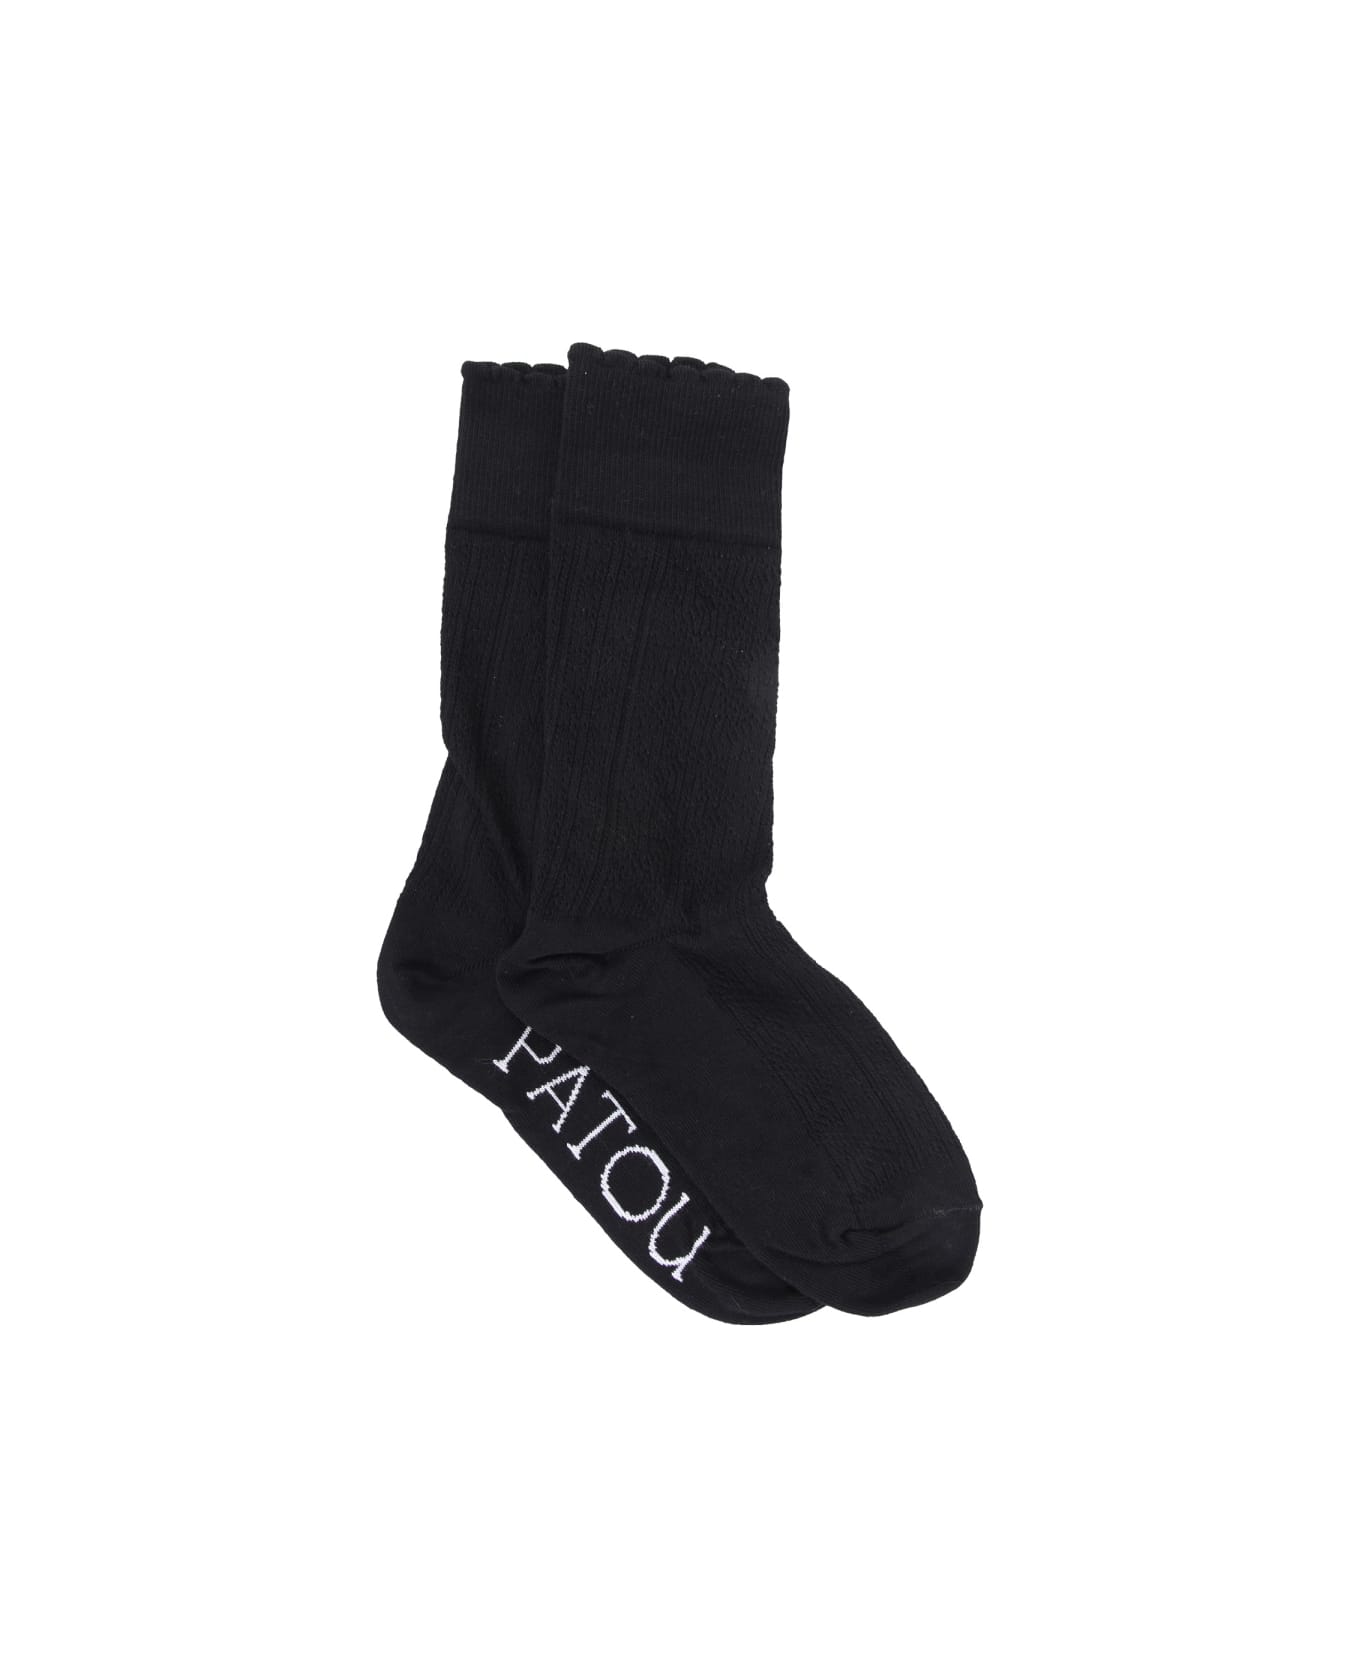 Patou Perforated Socks - BLACK